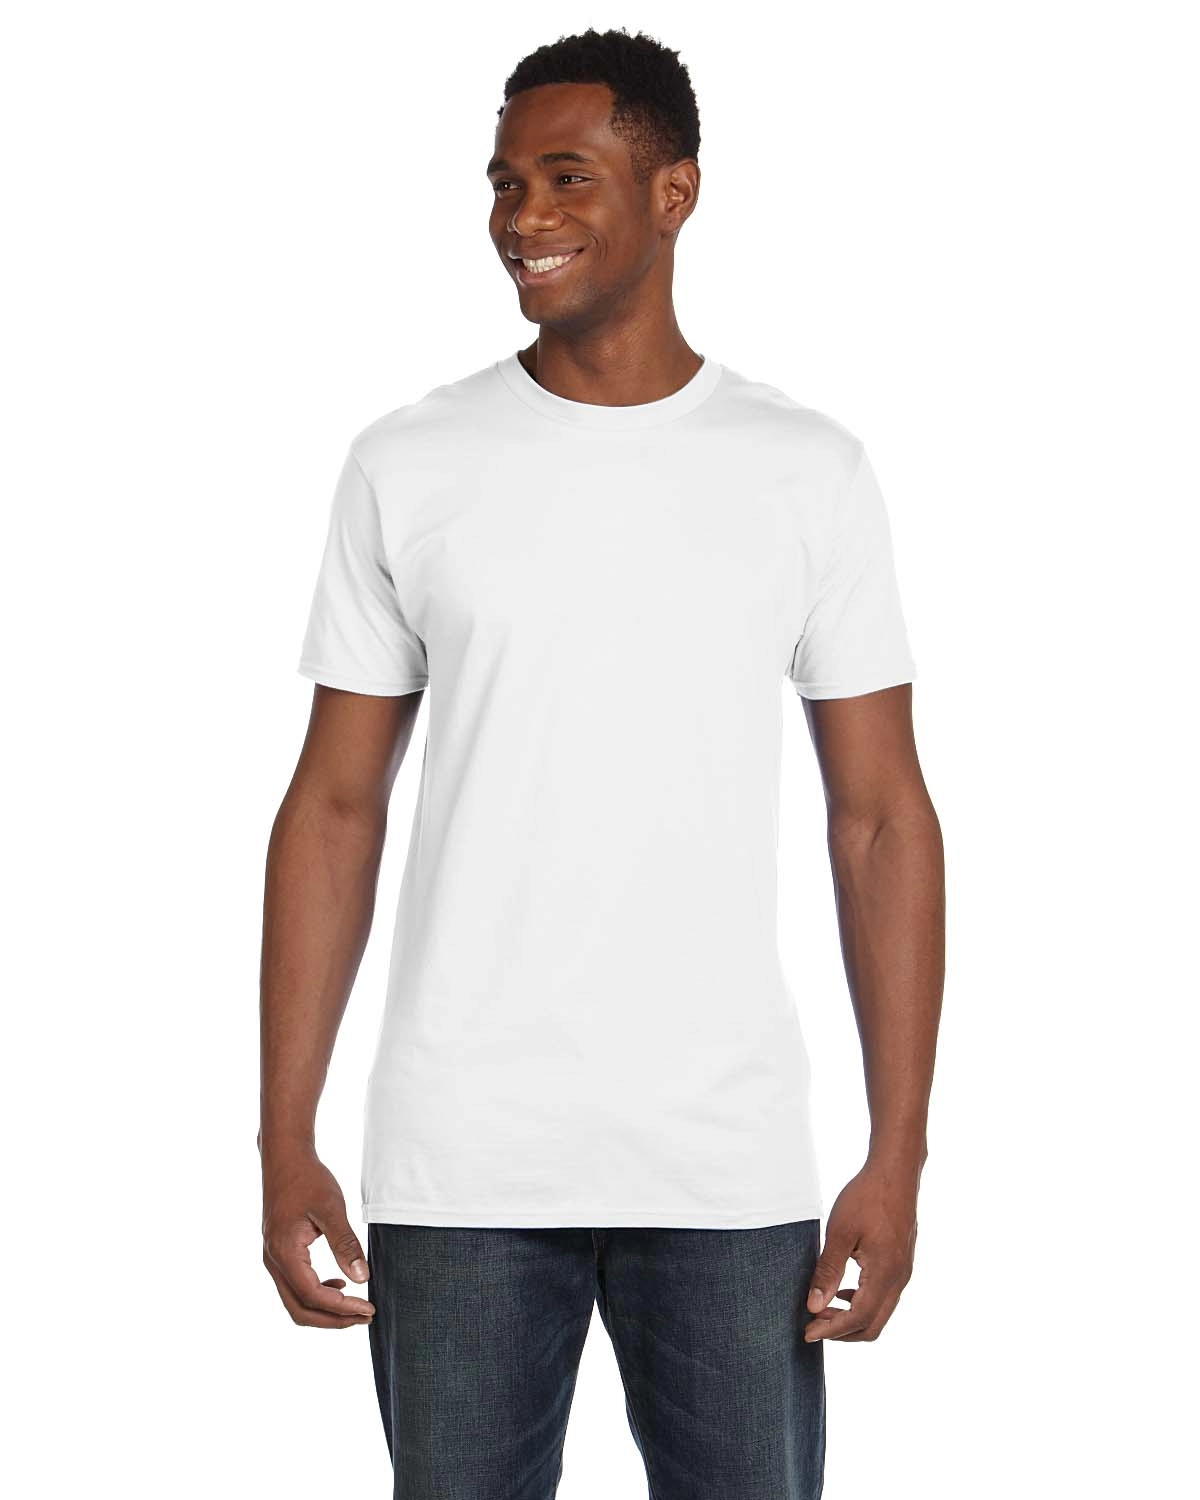 Hanes 4980 Ring-Spun T-shirt - From $2.26